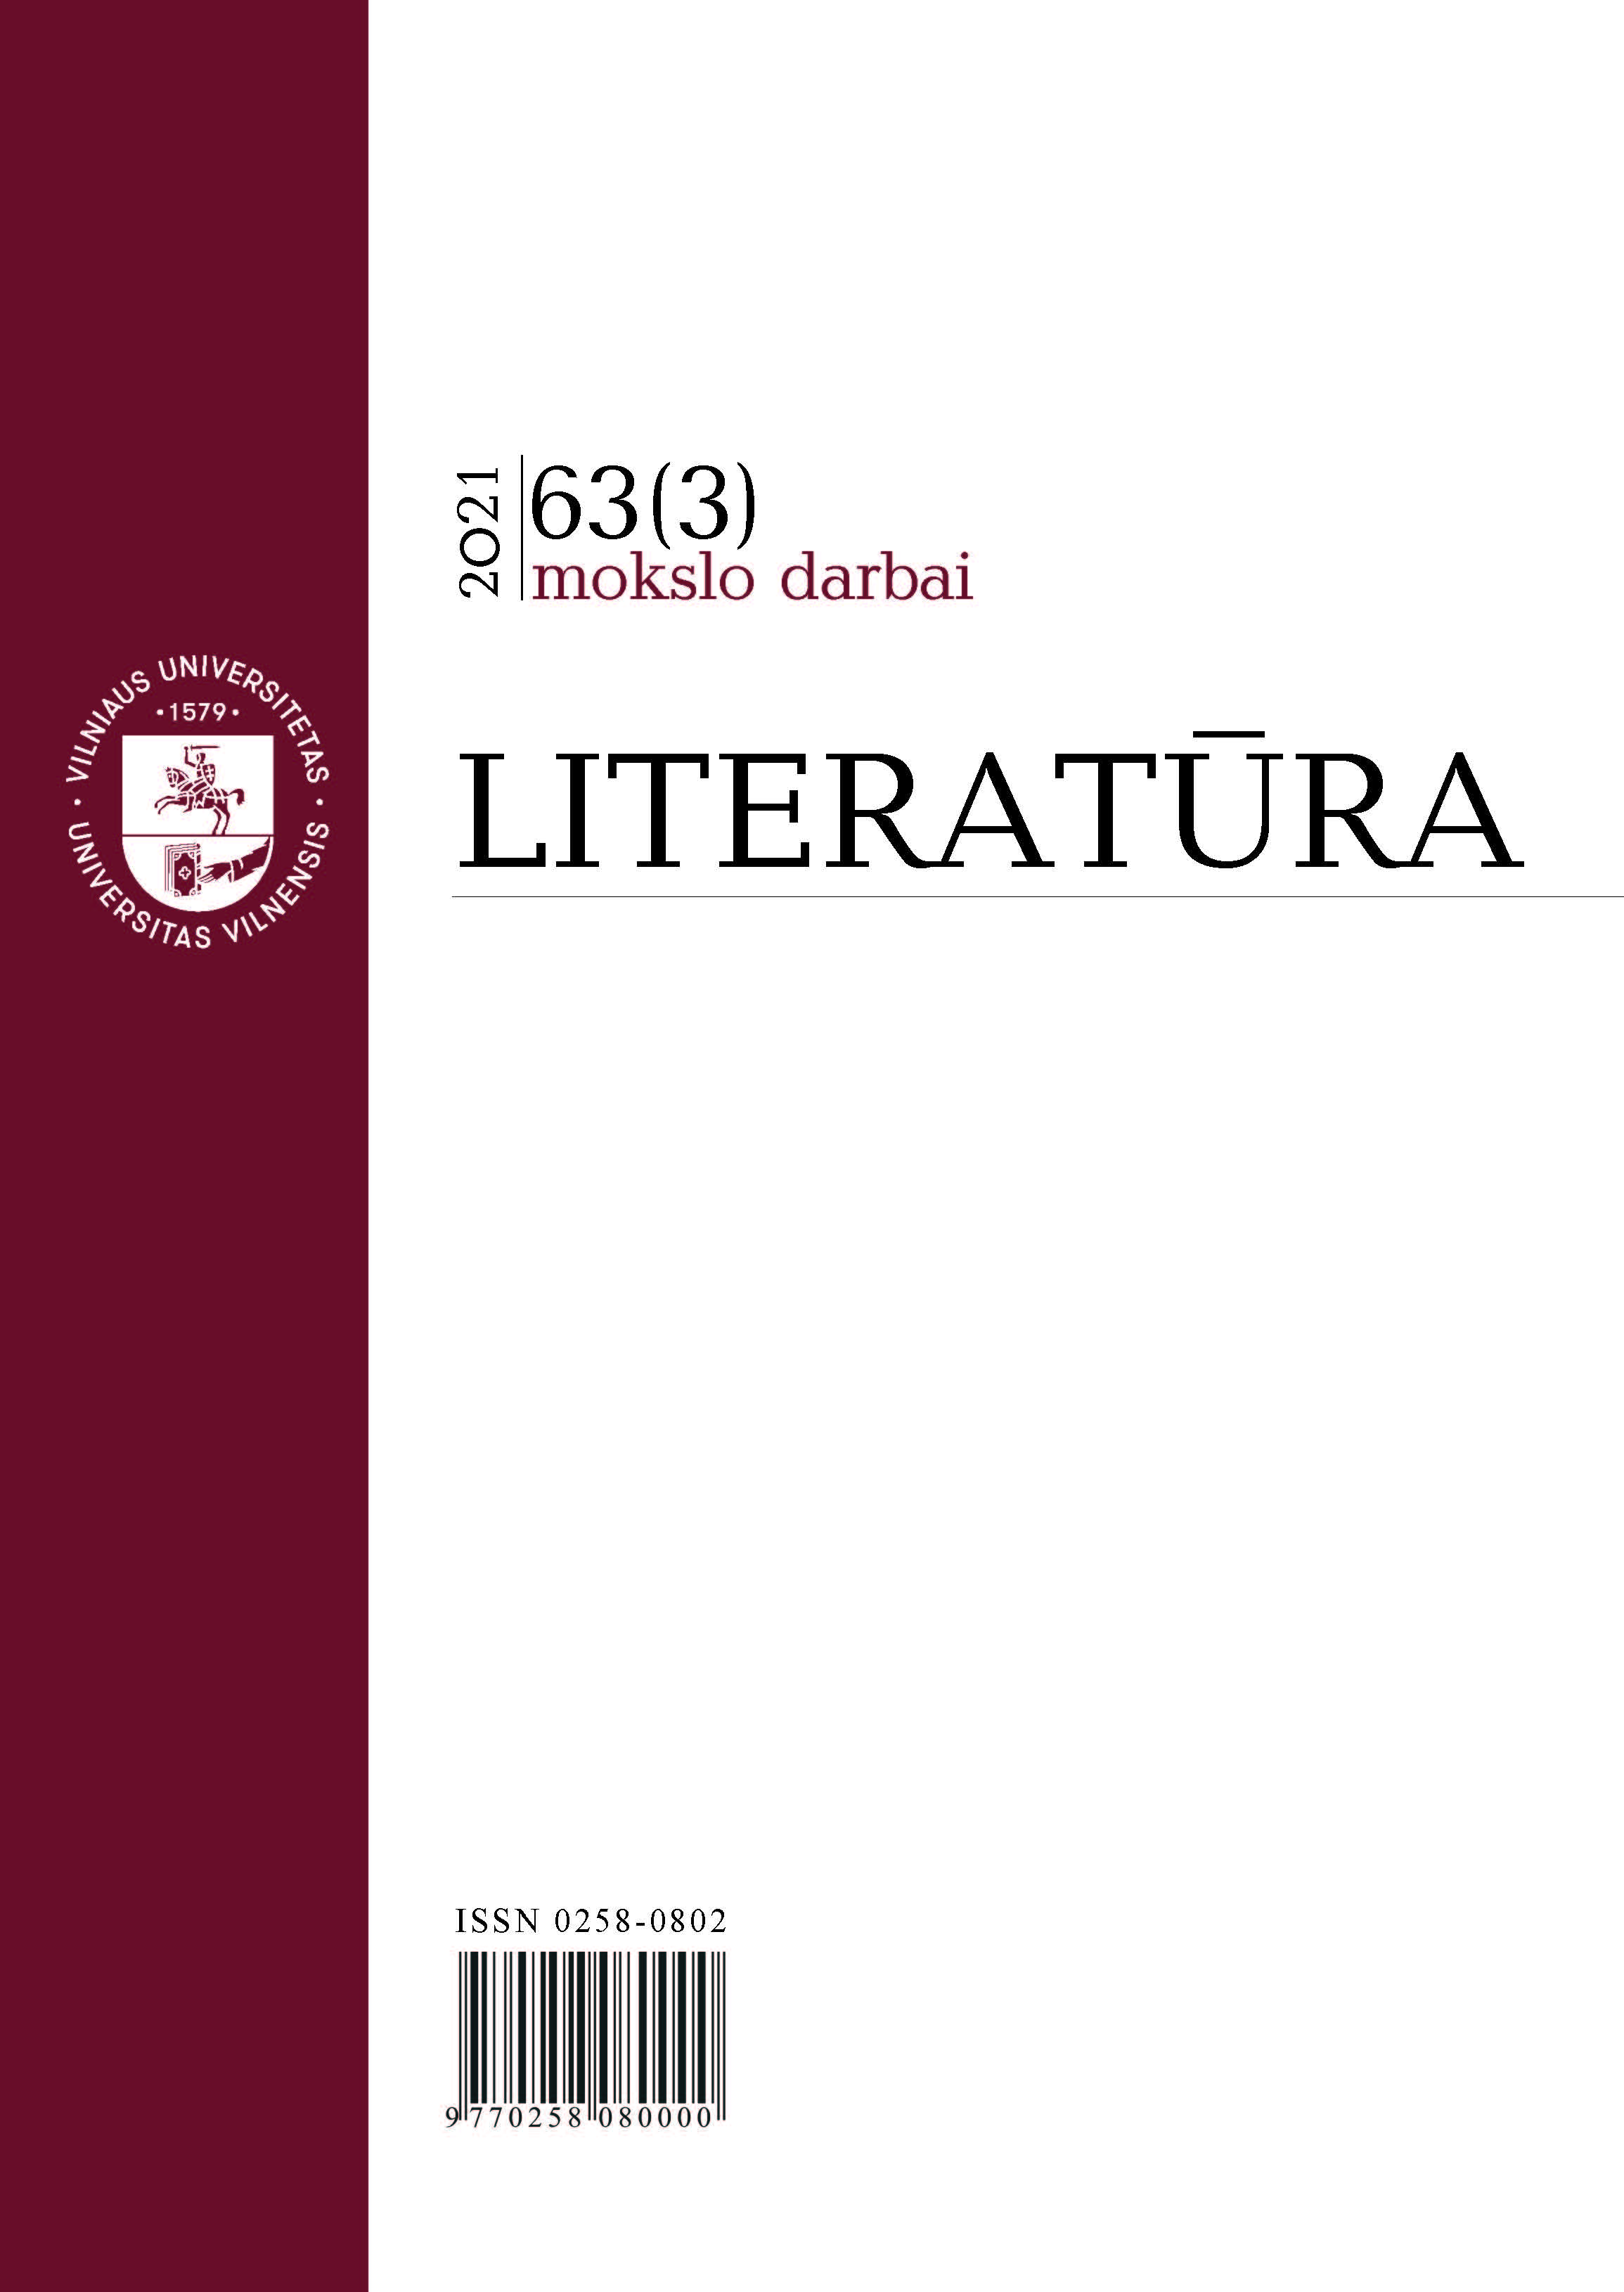 Literature Cover Image